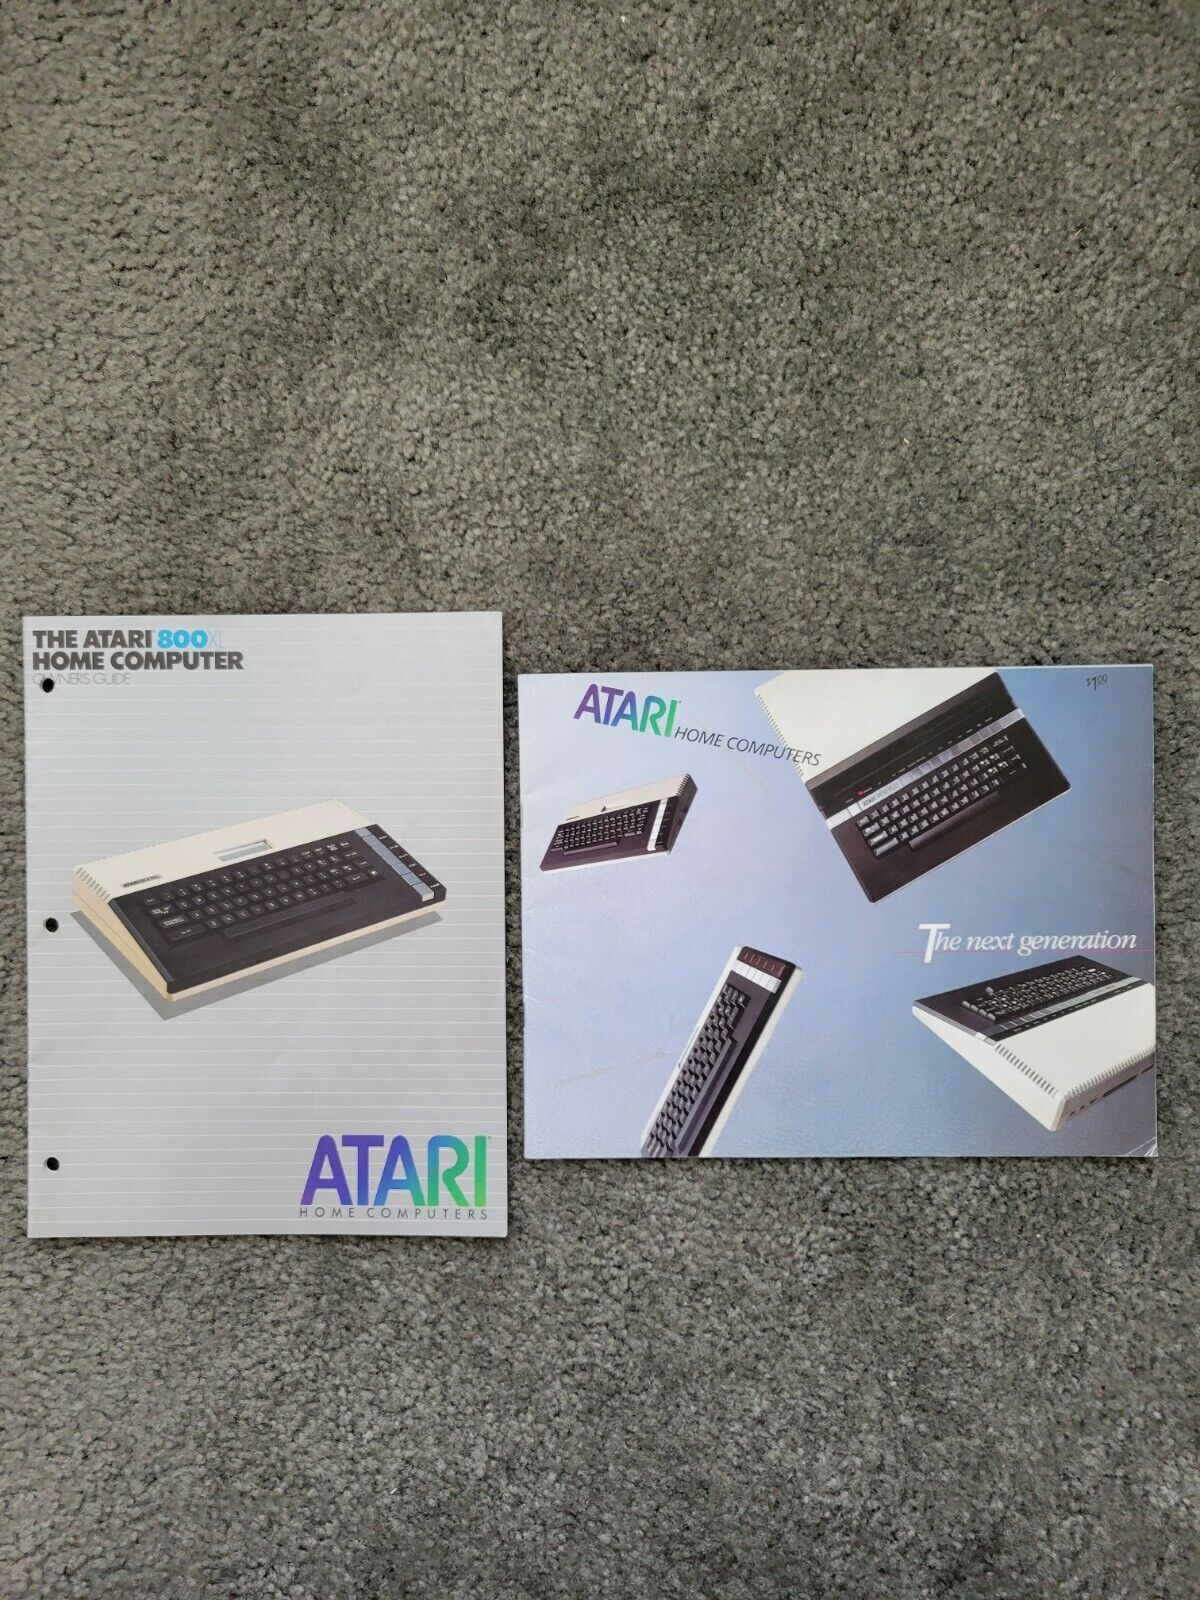 Atari 800xl Owners Guide and 1983 Atari home computer catalog